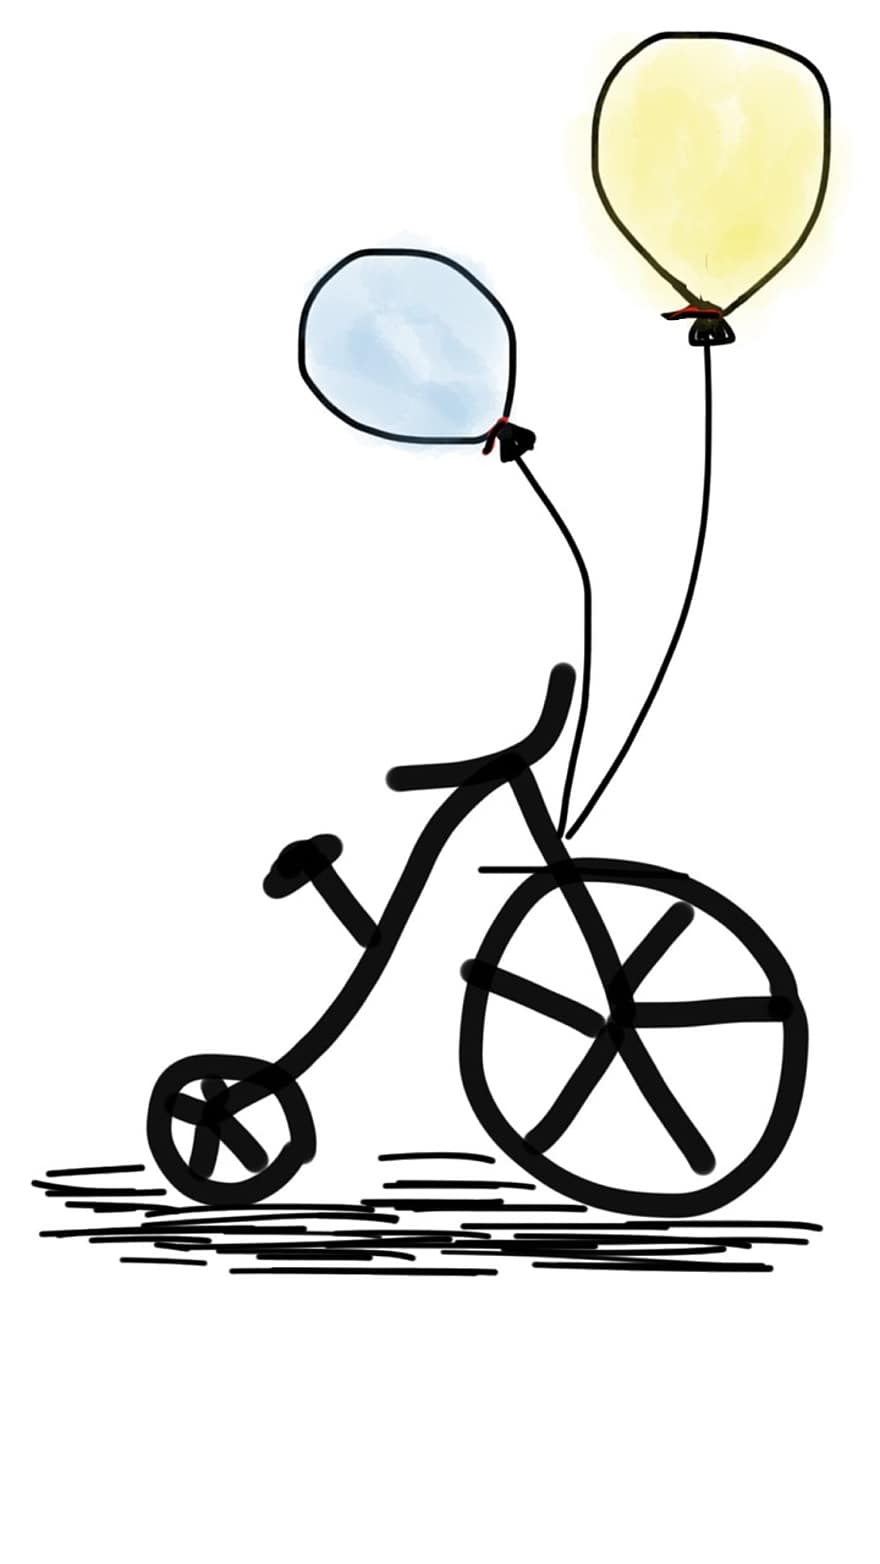 pyörä, polkupyörä, ilmapallo, keltainen ilmapallo, sininen ilmapallo, elämäntapa, pyöräily, Urheilu, ratsastaa, hauska, ulkona